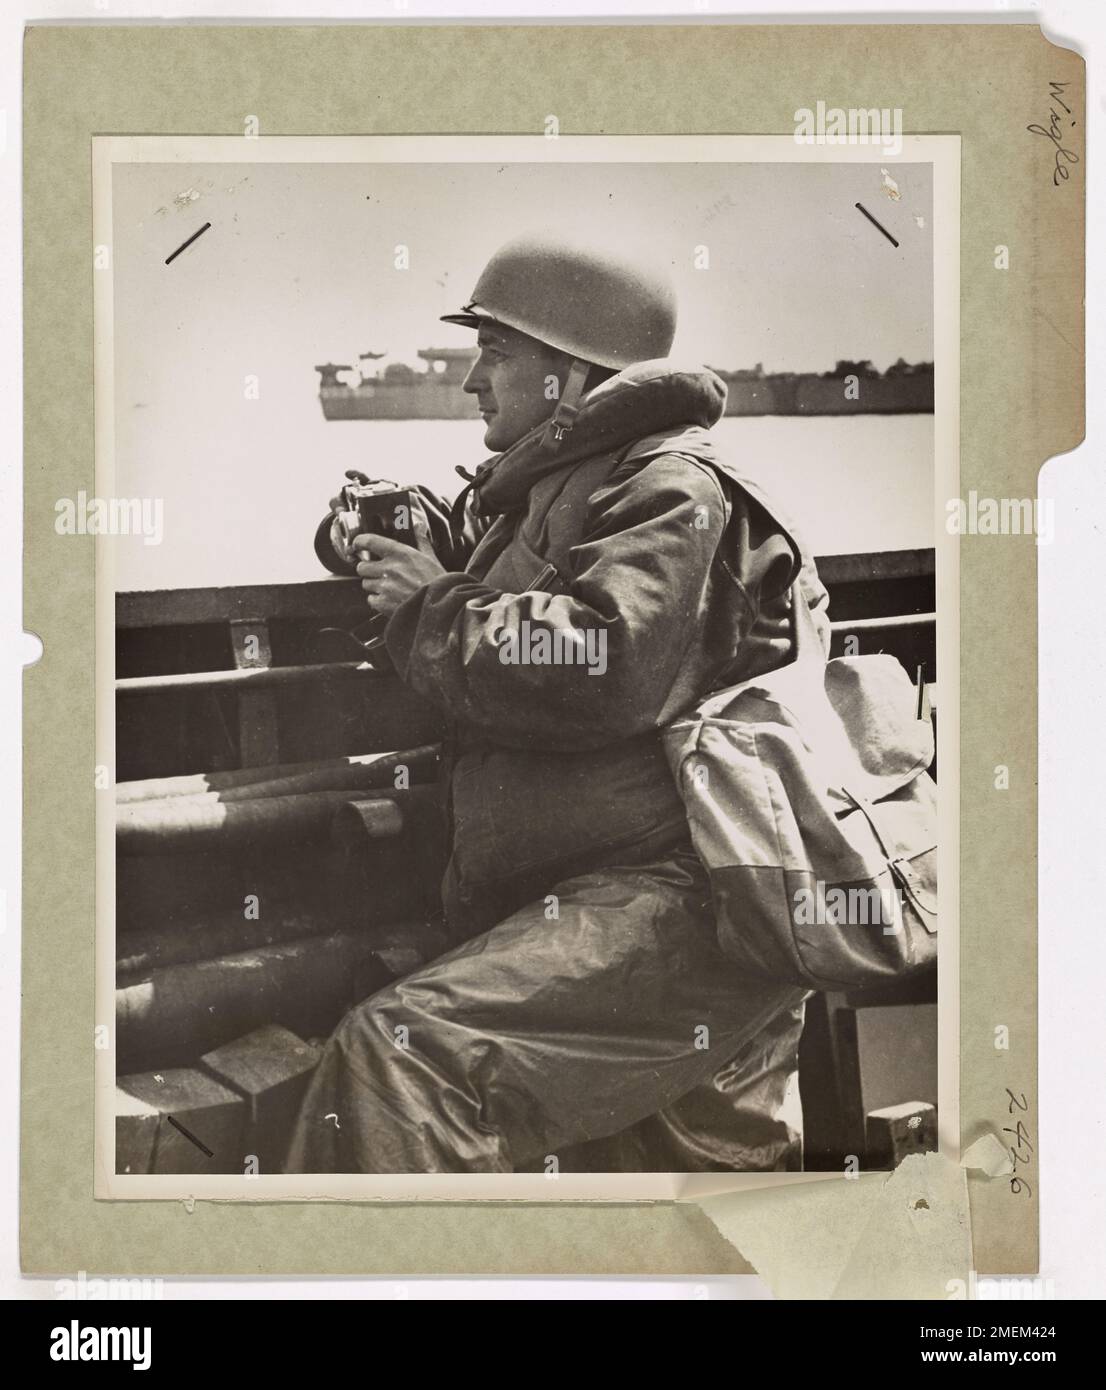 Scott Wigle Schickt Das Erste Invasionsfoto Zurück. Der Küstenwache-Kampffotograf S. Scott Wigle, ehemaliger Journalist von Detroit (Mich.), machte das erste Foto der Invasion in Frankreich, das über die USA in die USA zurückgeschickt wurde Teleobjektiv aus London am D Day. Auf dem Bild stand: "Sie sind aus. Die Invasion ist an,' zeigte Kolumnen von truppengepackten LCI's, die über den Ärmelkanal nach Frankreich fliegen. Über uns lagen Sperrballons, um das Infanterie-Landefahrzeug gegen niederfliegende Nazi-Straftäter zu schützen. Wigle, dessen Haus in Detroit ist, diente eine Zeit lang im Hauptquartier der Küstenwache Stockfoto